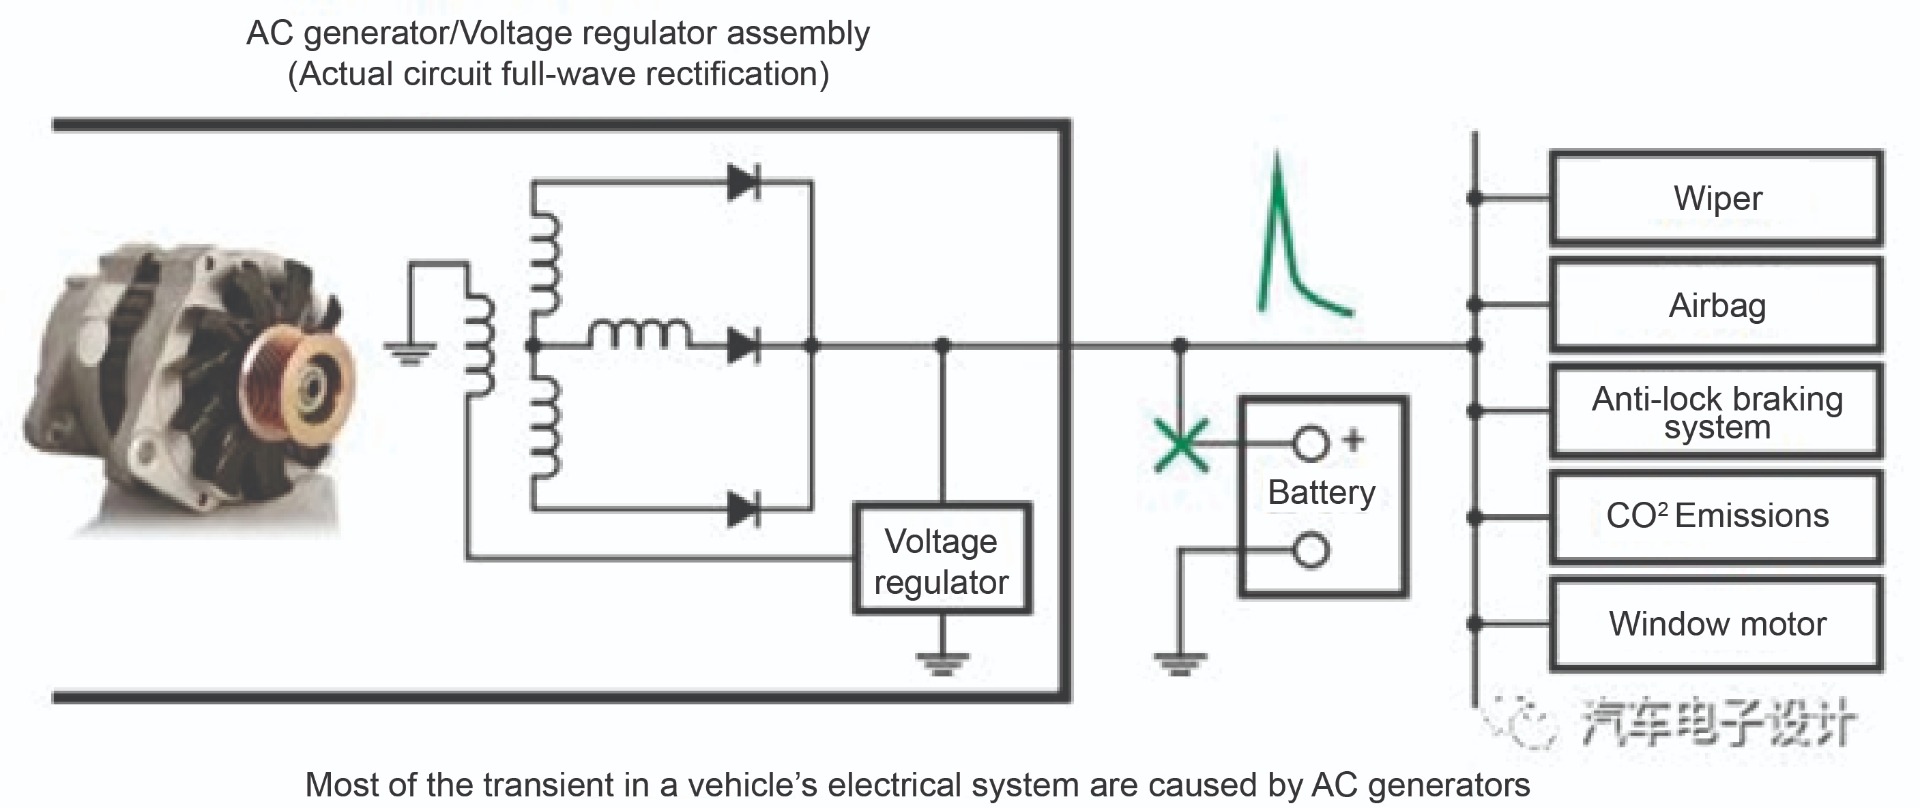 Figure 1: Transient AC Generator